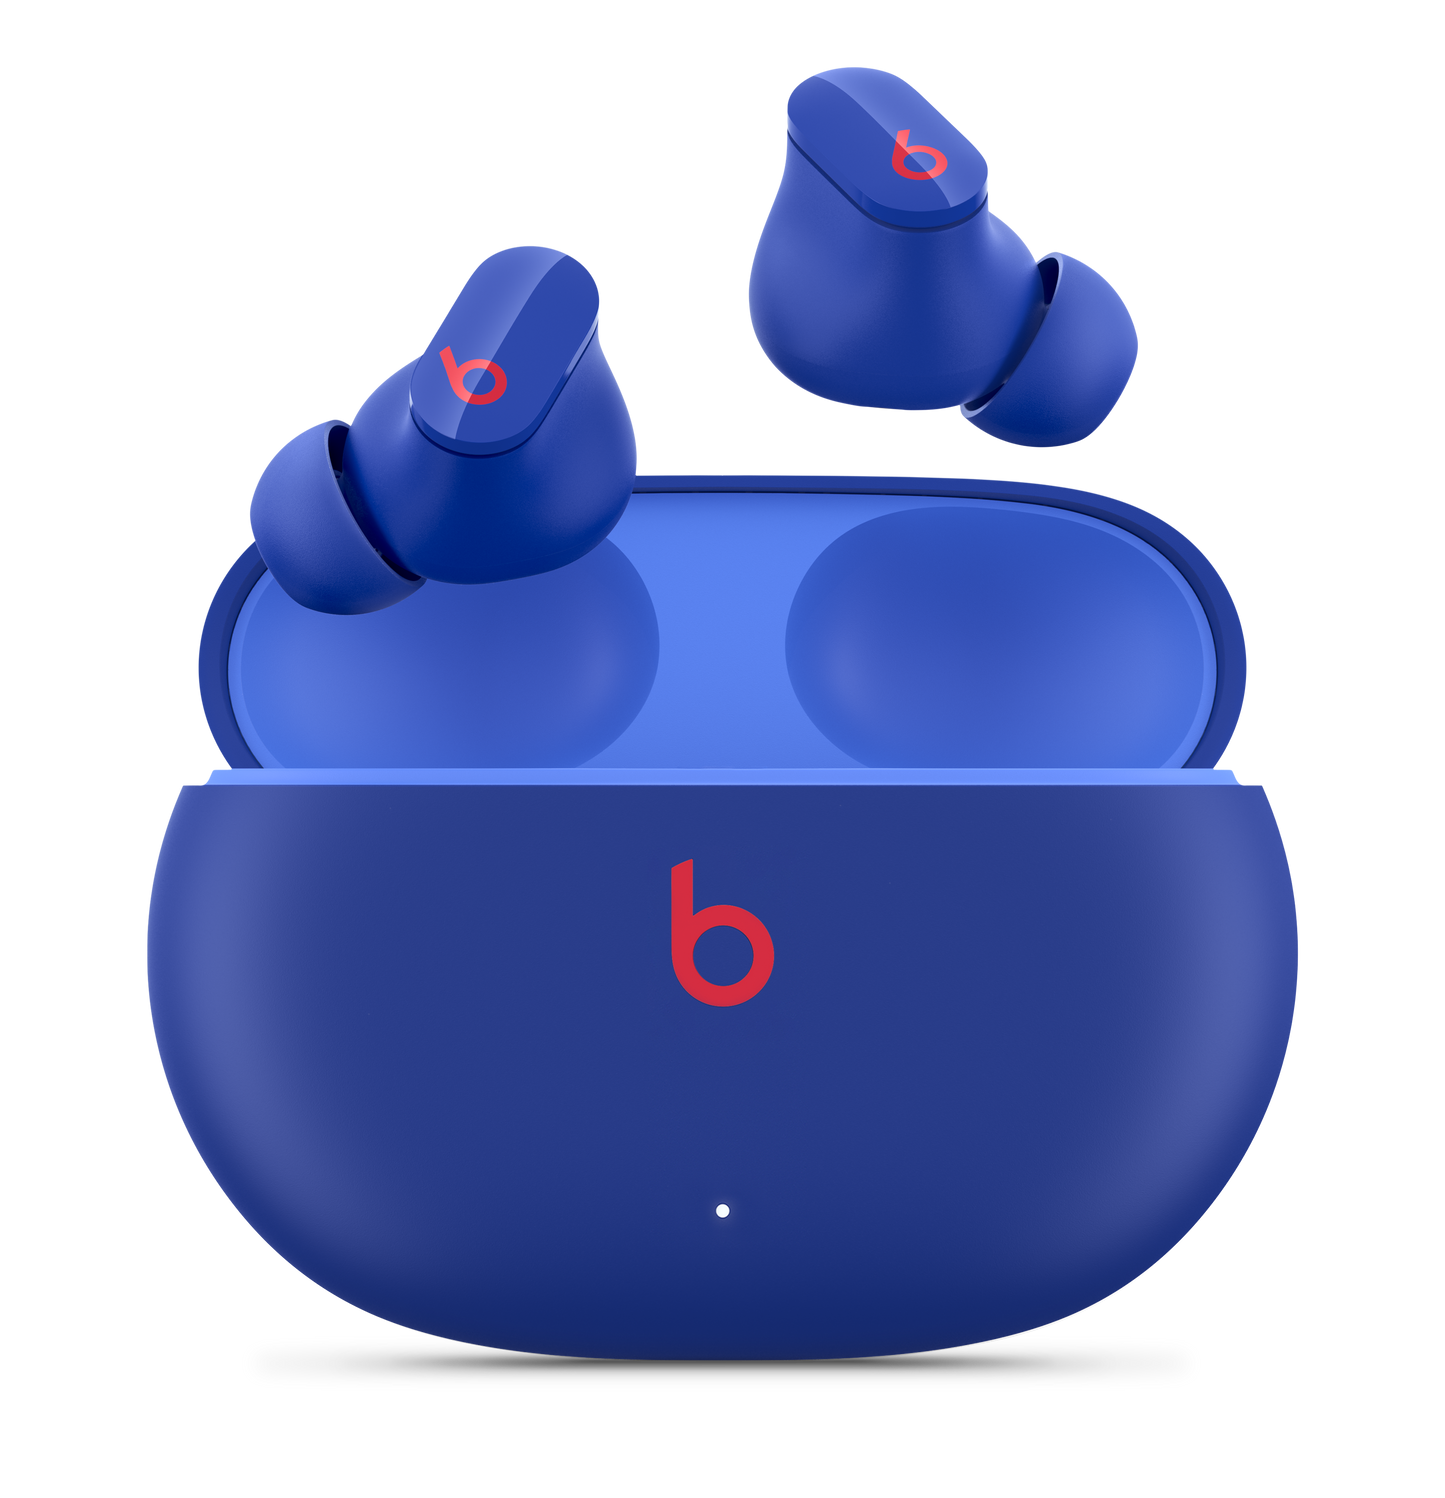 Beats Studio Buds True Wireless Noise Cancelling Earphones Ocean Blue